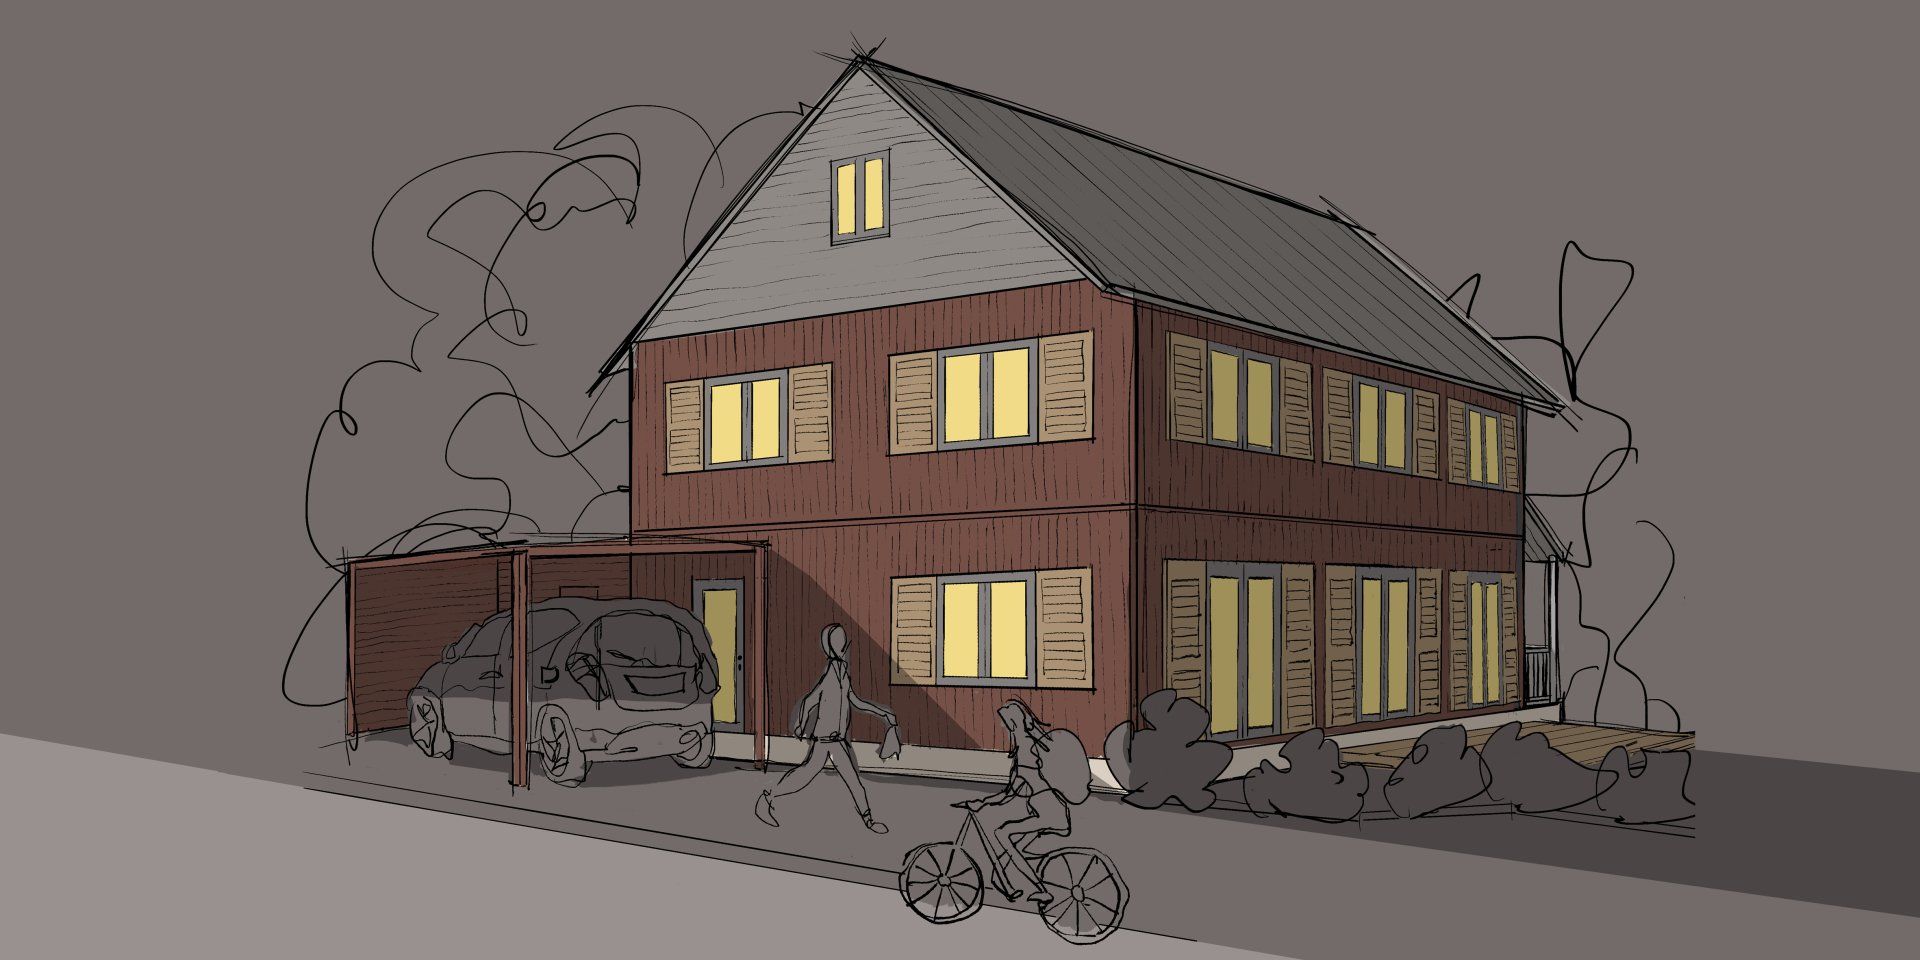 Grübbel Architektur. Atelier. - Beispiel eines Einfamilienhauses in Holzrahmenbausweise - Ansicht 2